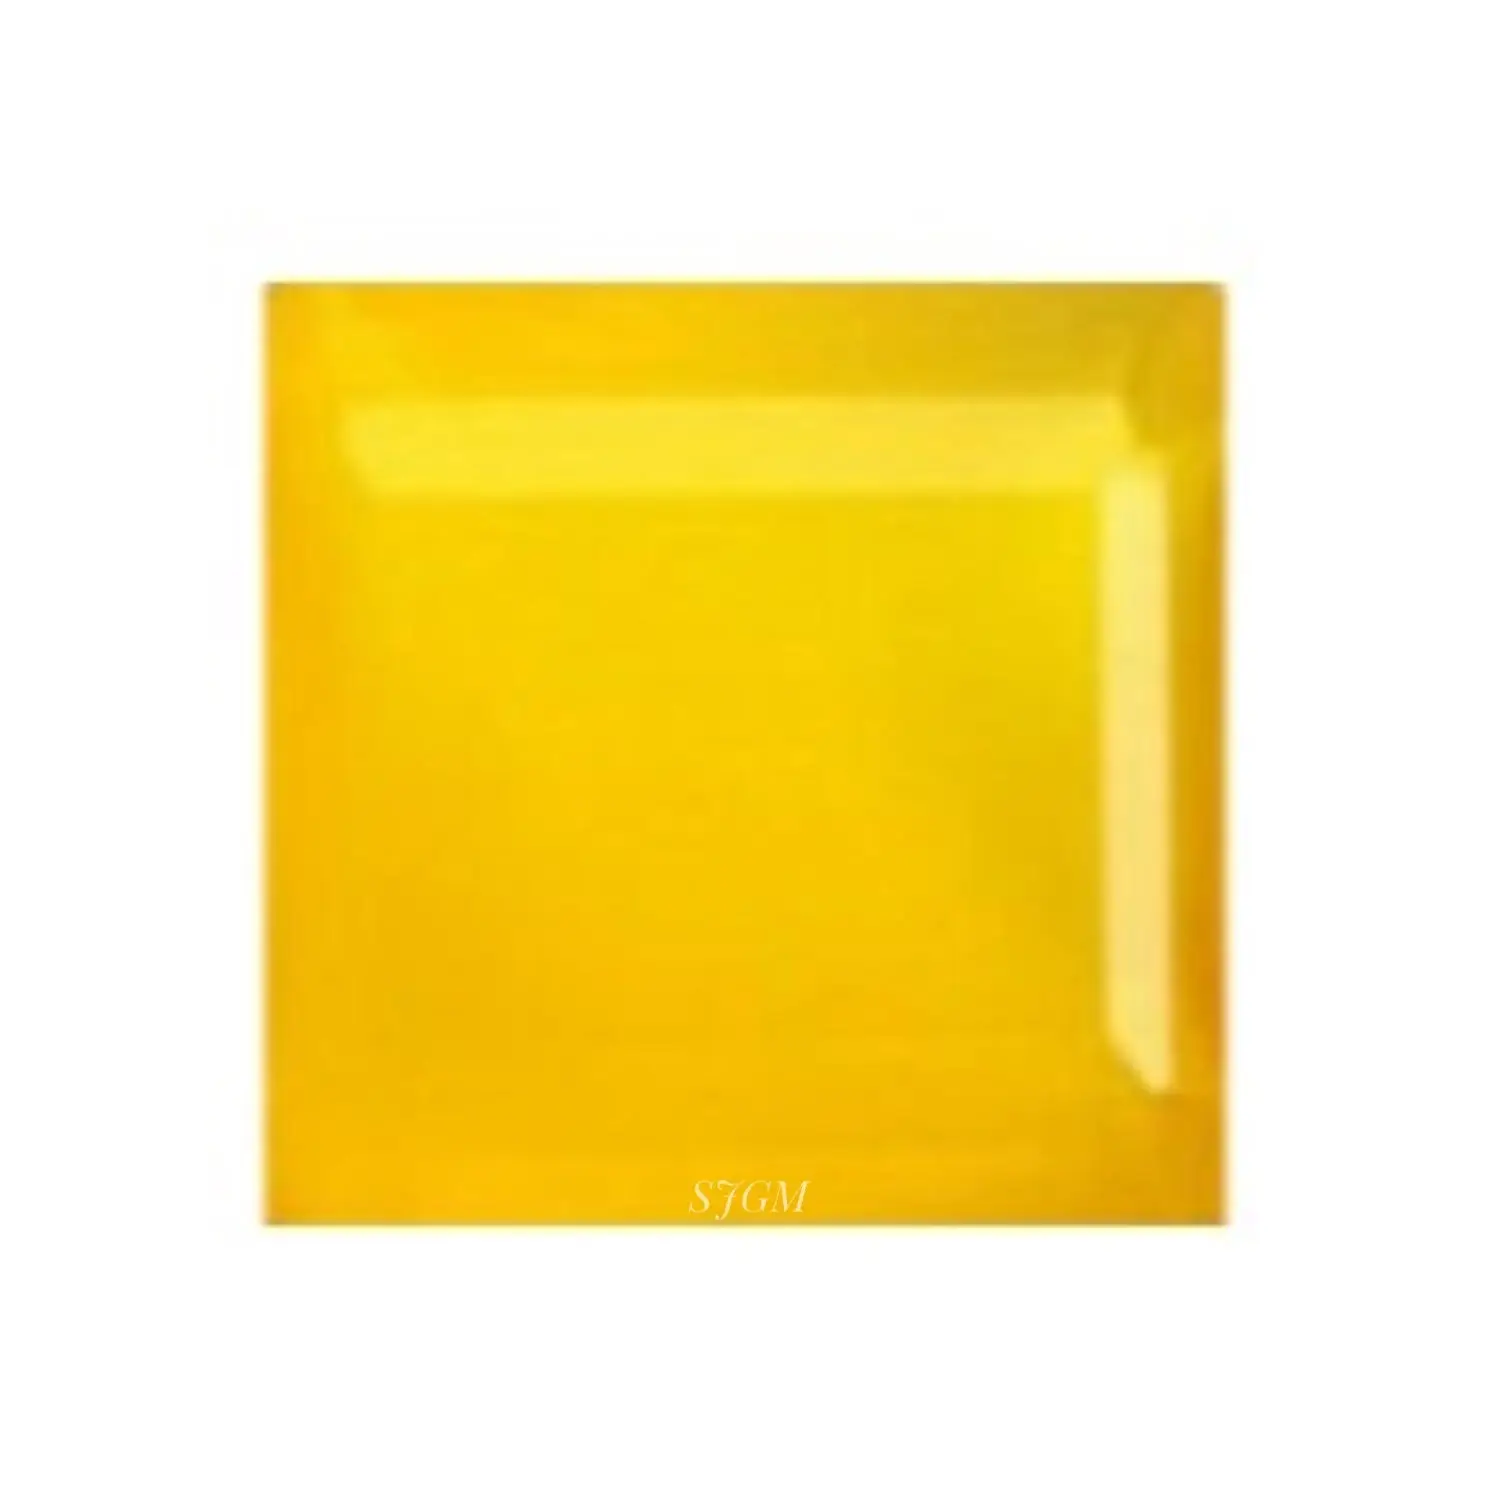 "11mm kare kesim doğal mavi/pembe/sarı/AQUA kalsedon" toptan fabrika fiyat yüksek kalite gevşek taşlar | GIA